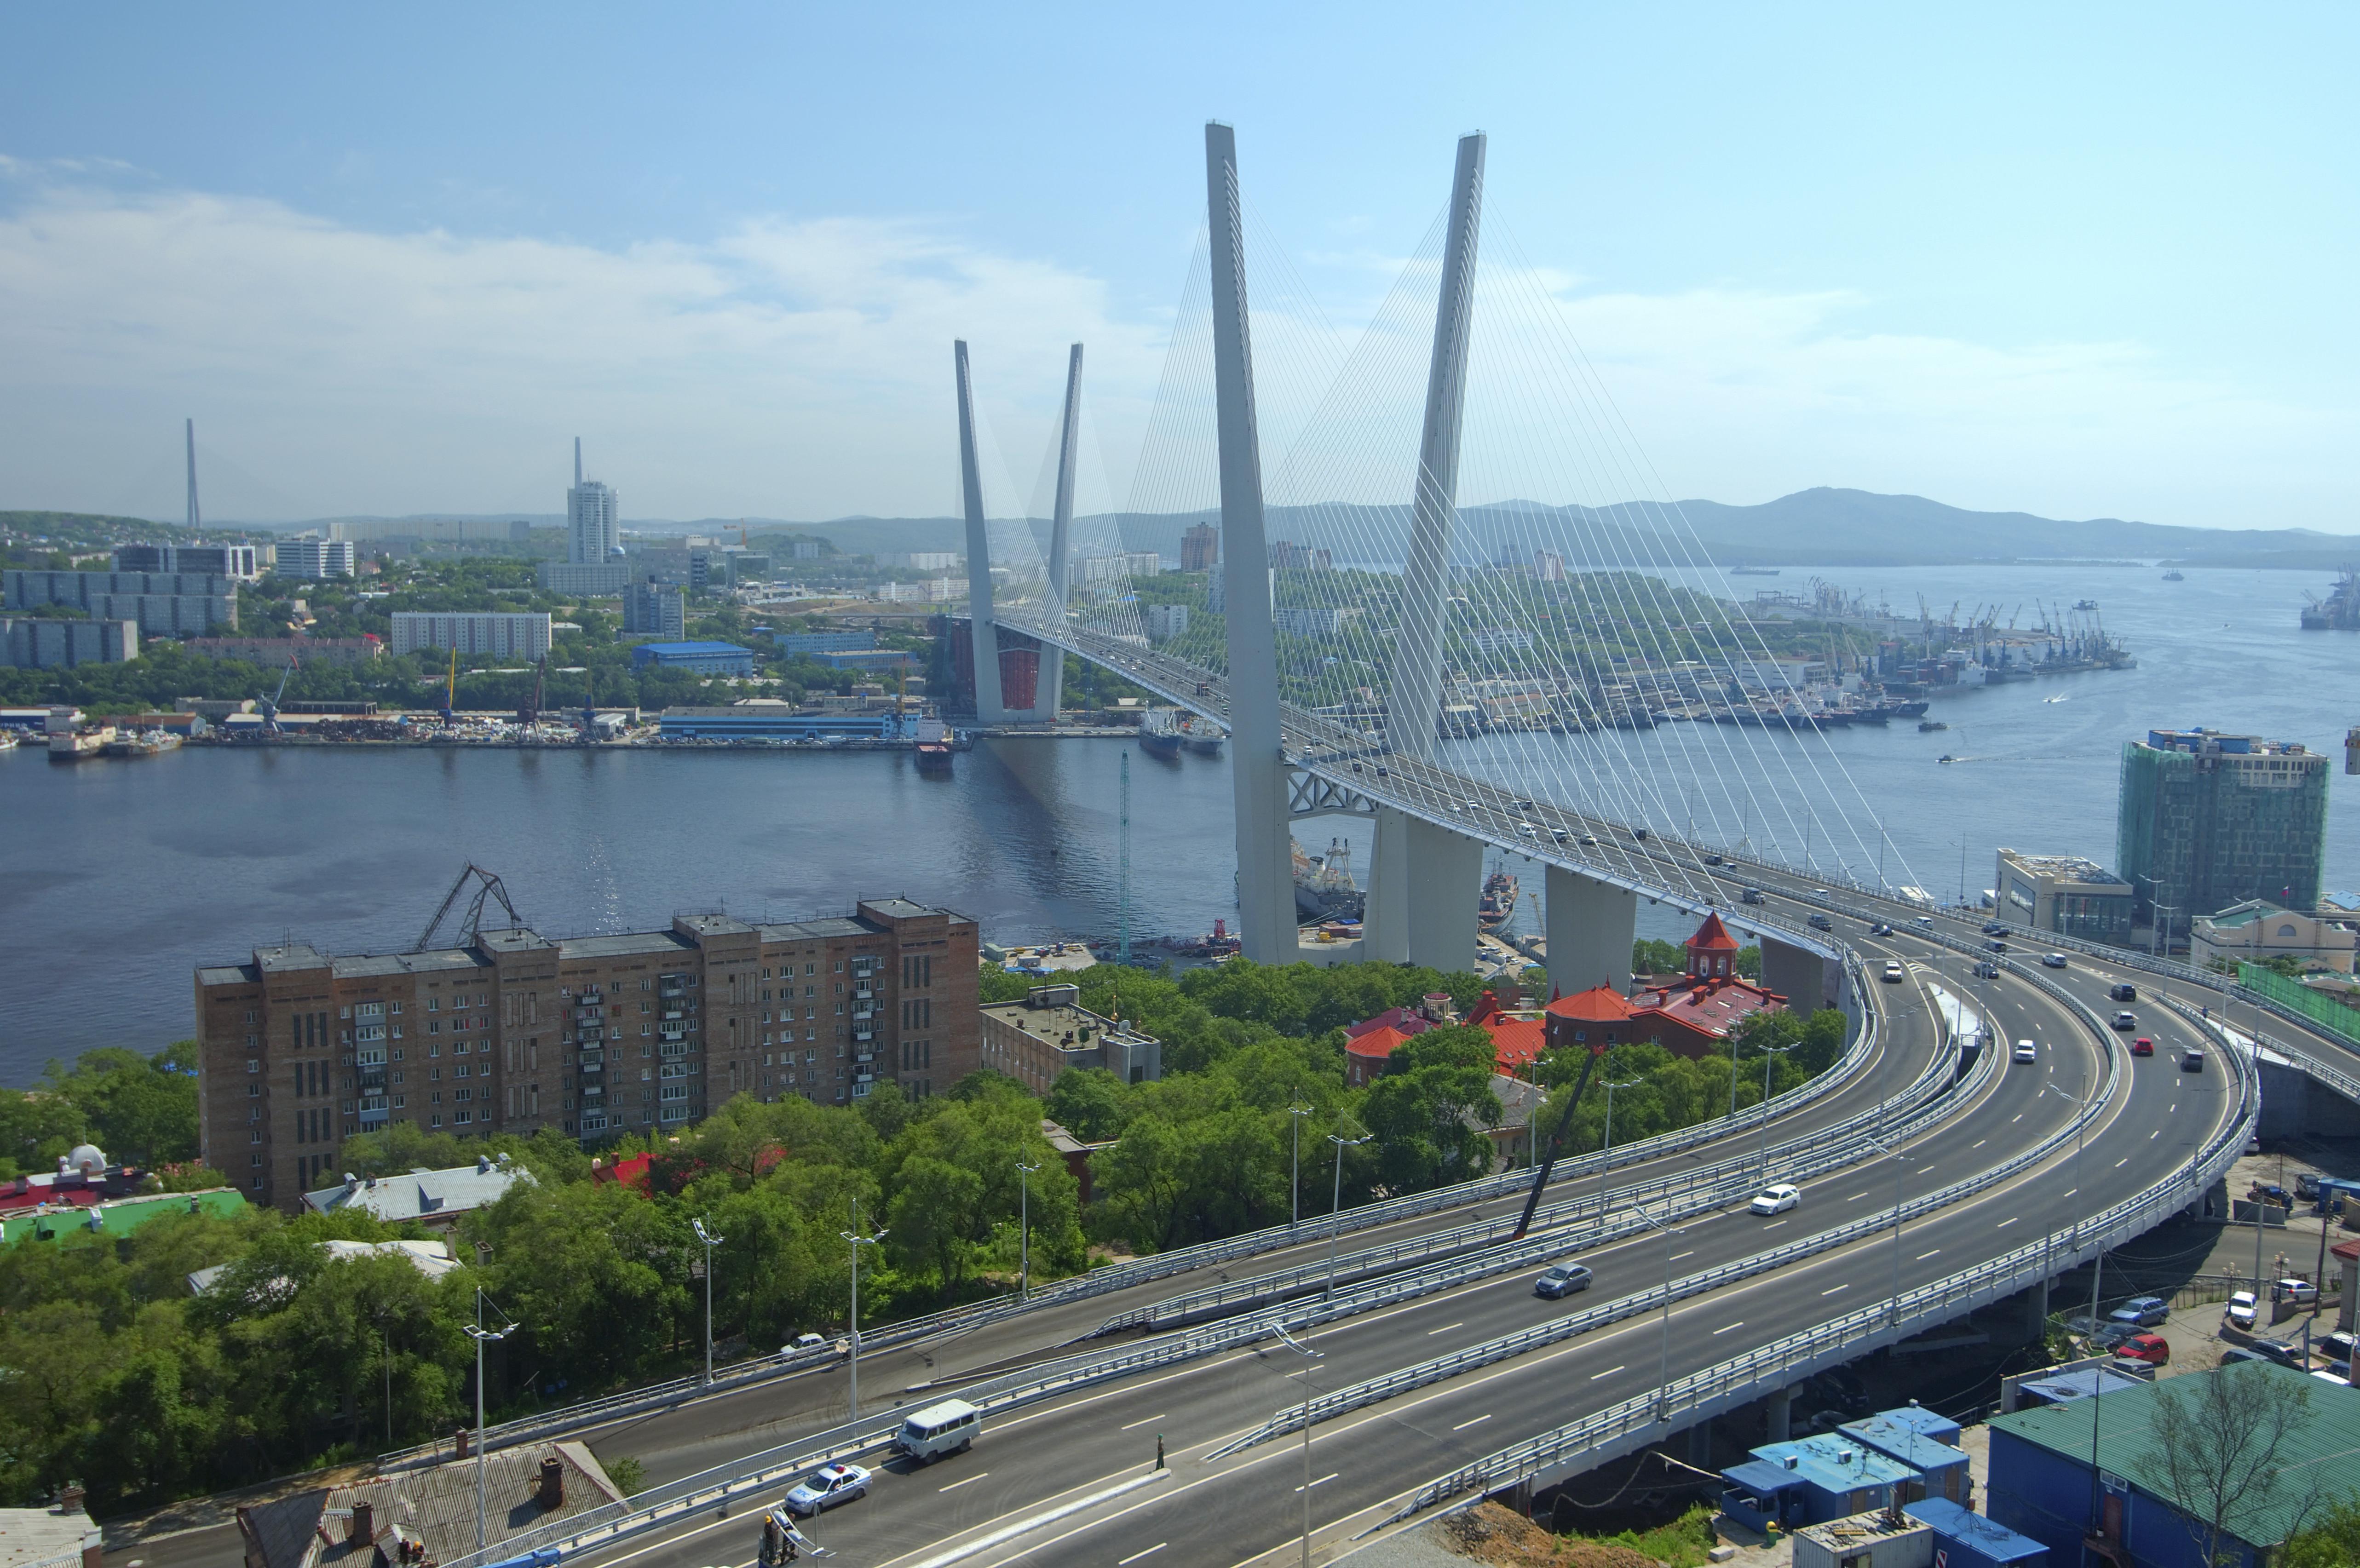 View of Vladivostok. Source: Andrey Nekrasov/Global Look Press